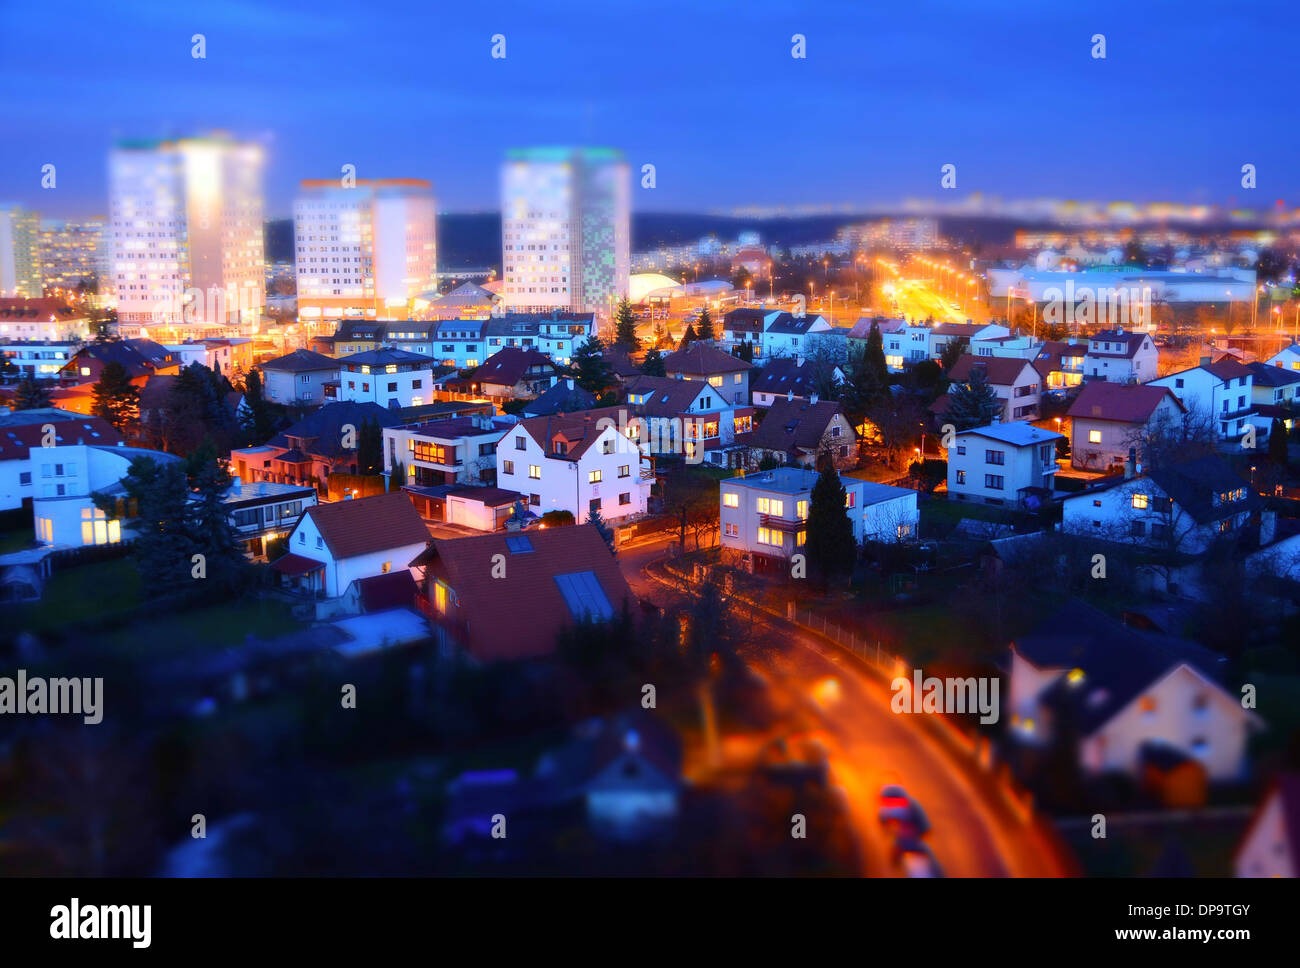 La città di Praga con grandi case prefabbricate e case al crepuscolo con tilt-shift effetto. Foto Stock